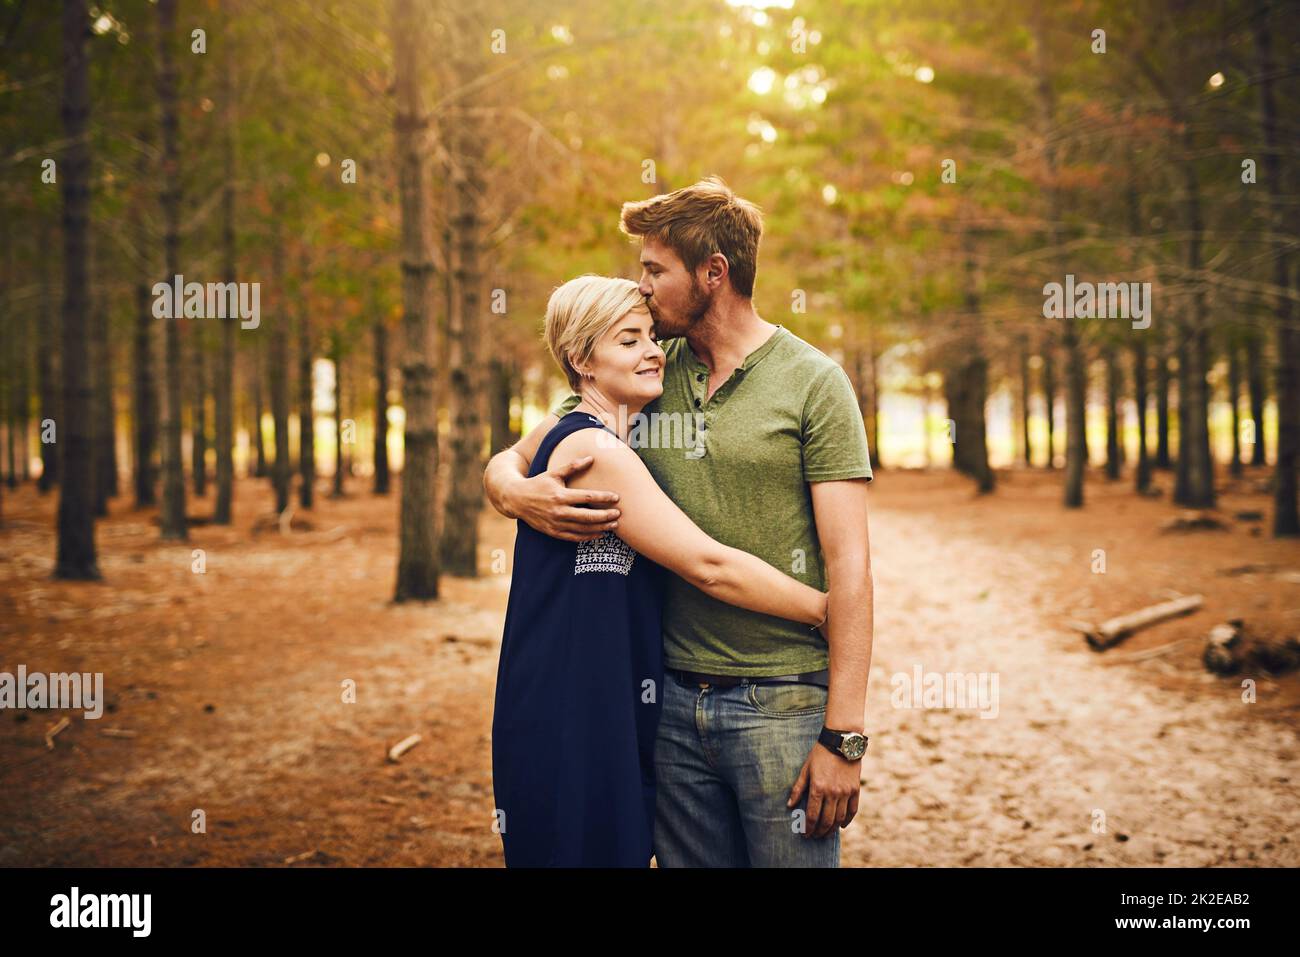 Siamo benedetti ad essere insieme. Scatto di una coppia amorevole che si abbraccia l'un l'altro in un abbraccio mentre si levano in piedi fuori nei boschi. Foto Stock